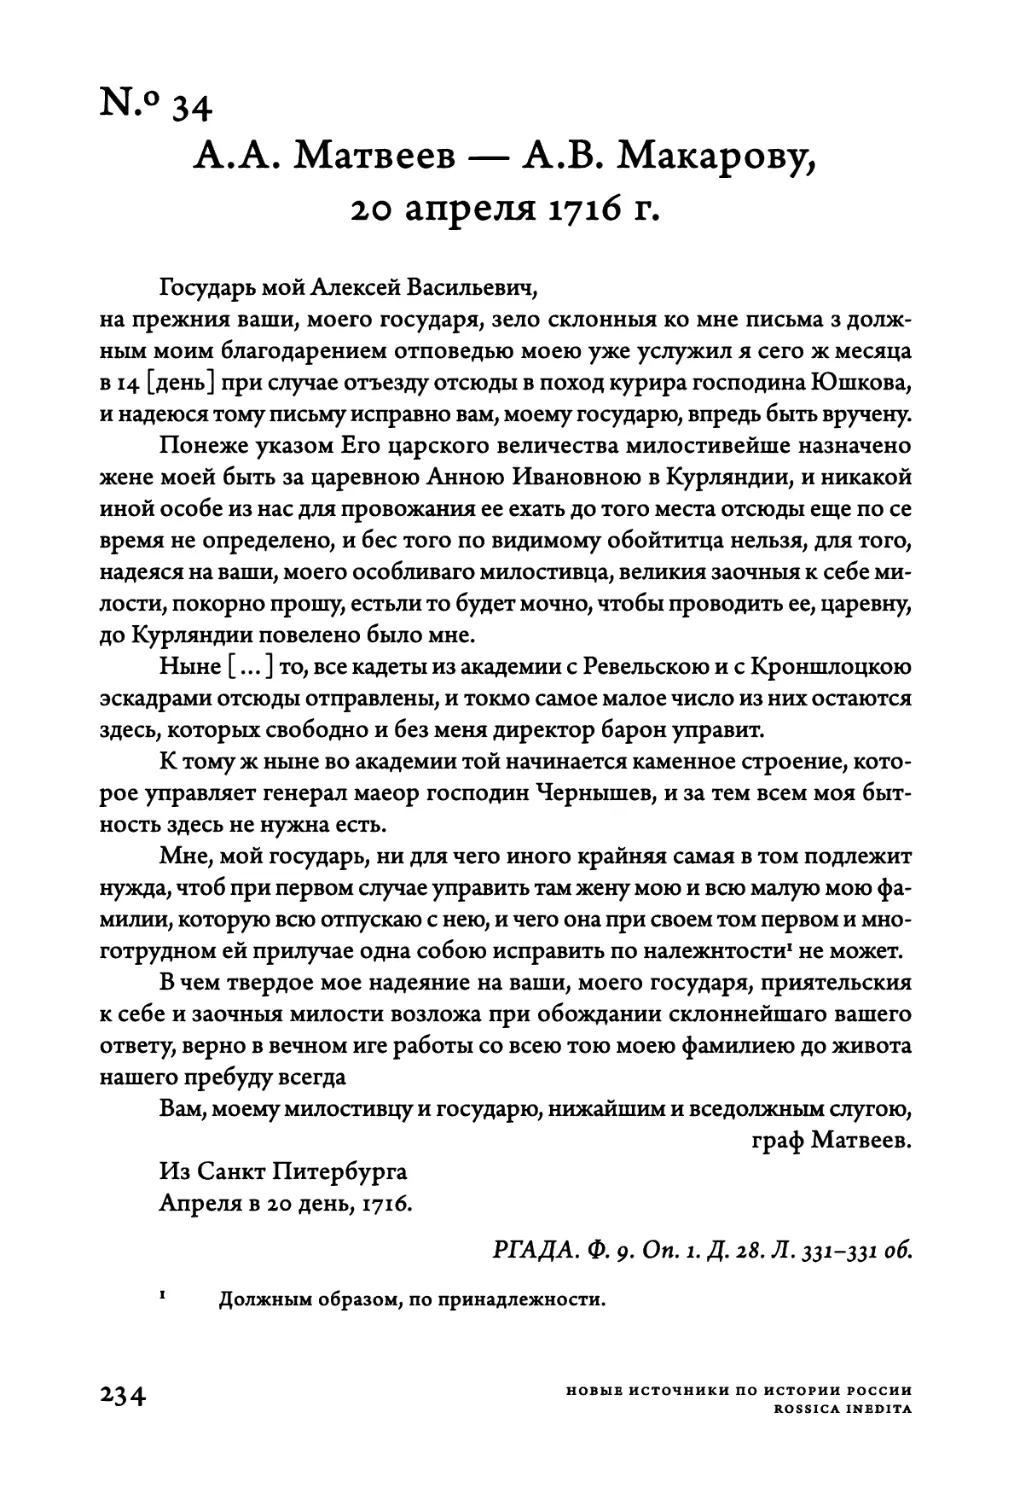 Ν.°34. A.A. Матвеев — A.B. Макарову, 20 апреля 1716 г.